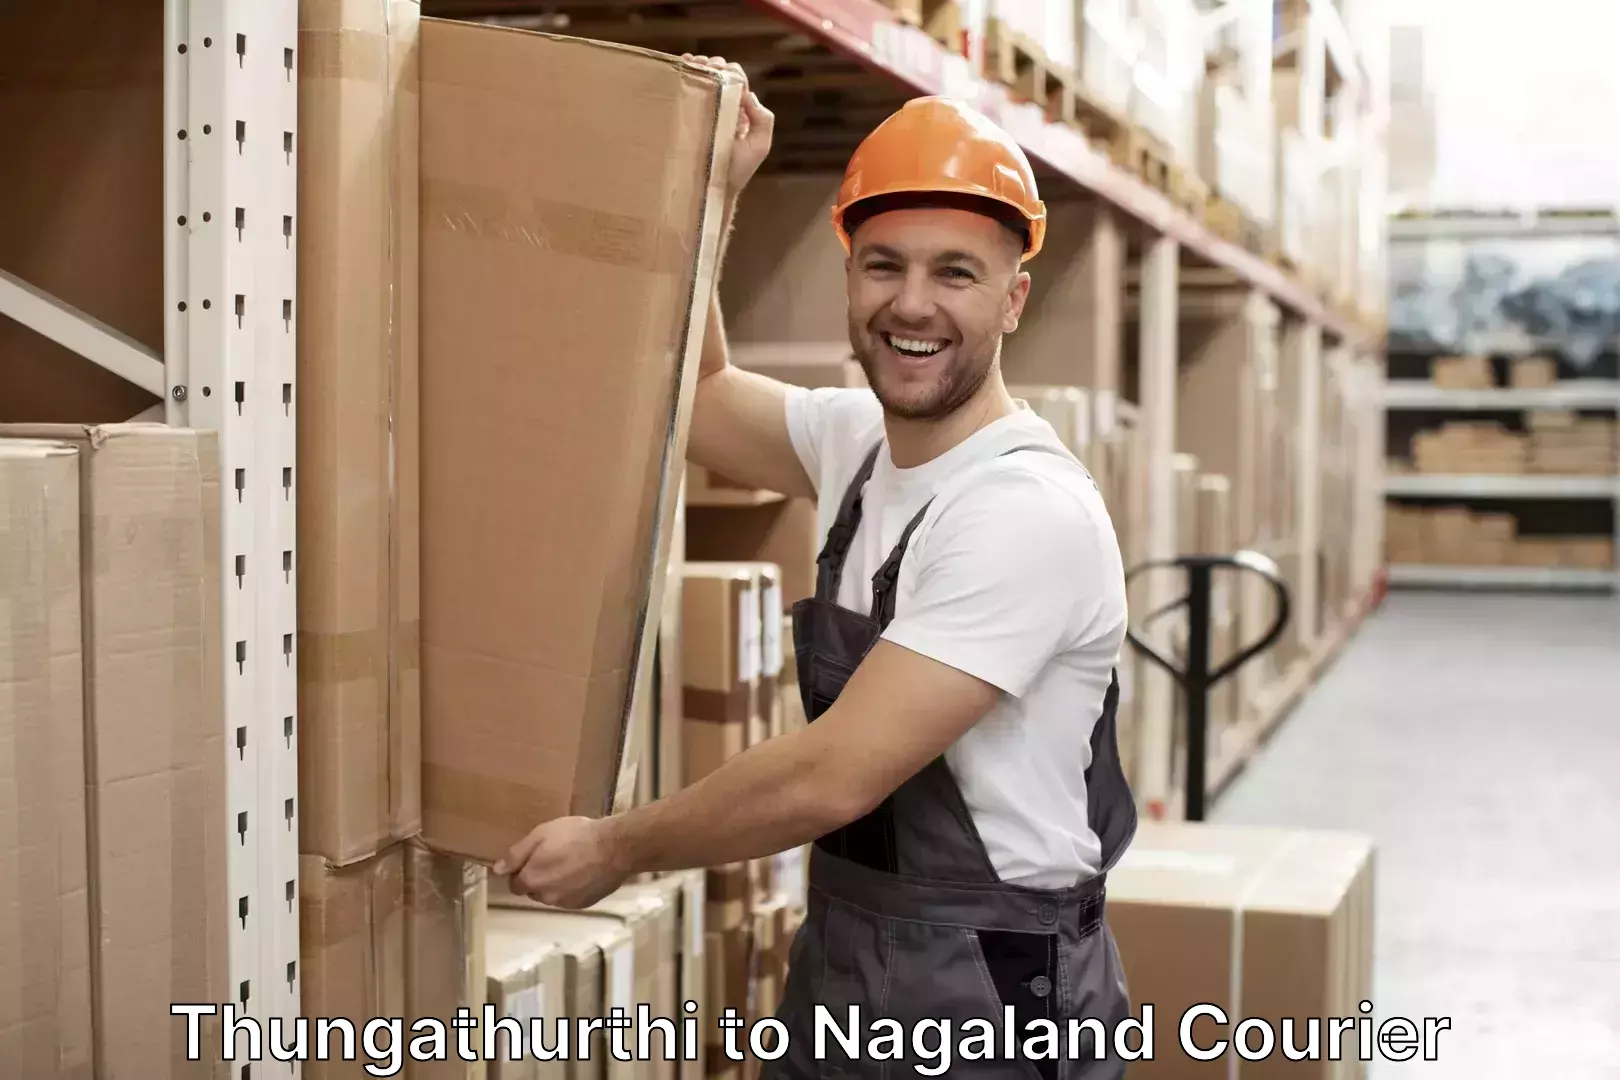 Nationwide luggage courier Thungathurthi to Nagaland